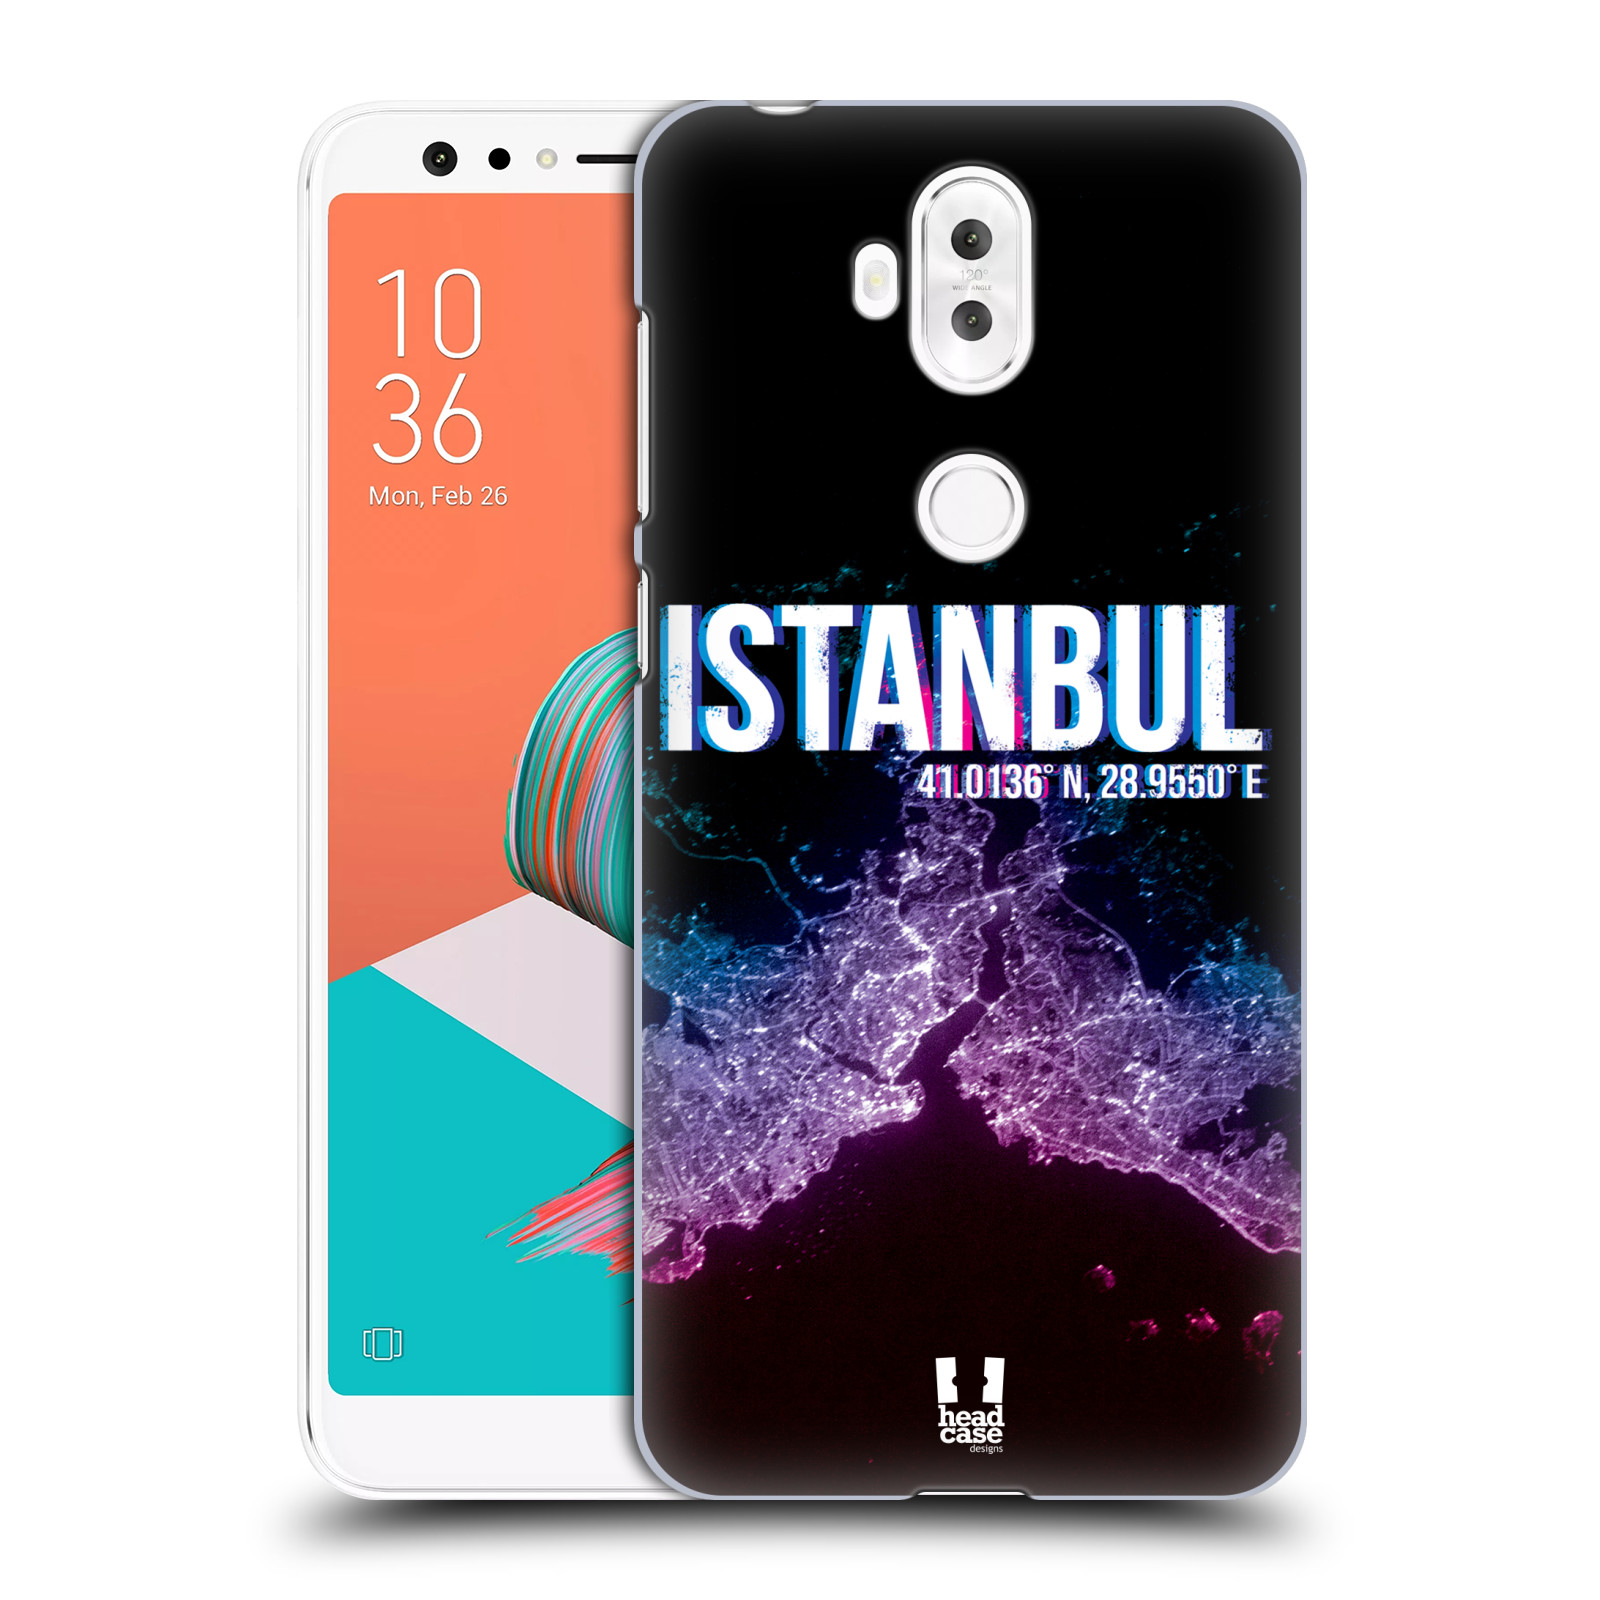 HEAD CASE plastový obal na mobil Asus Zenfone 5 LITE ZC600KL vzor Světla známých měst, Satelitní snímky TURECKO, ISTANBUL